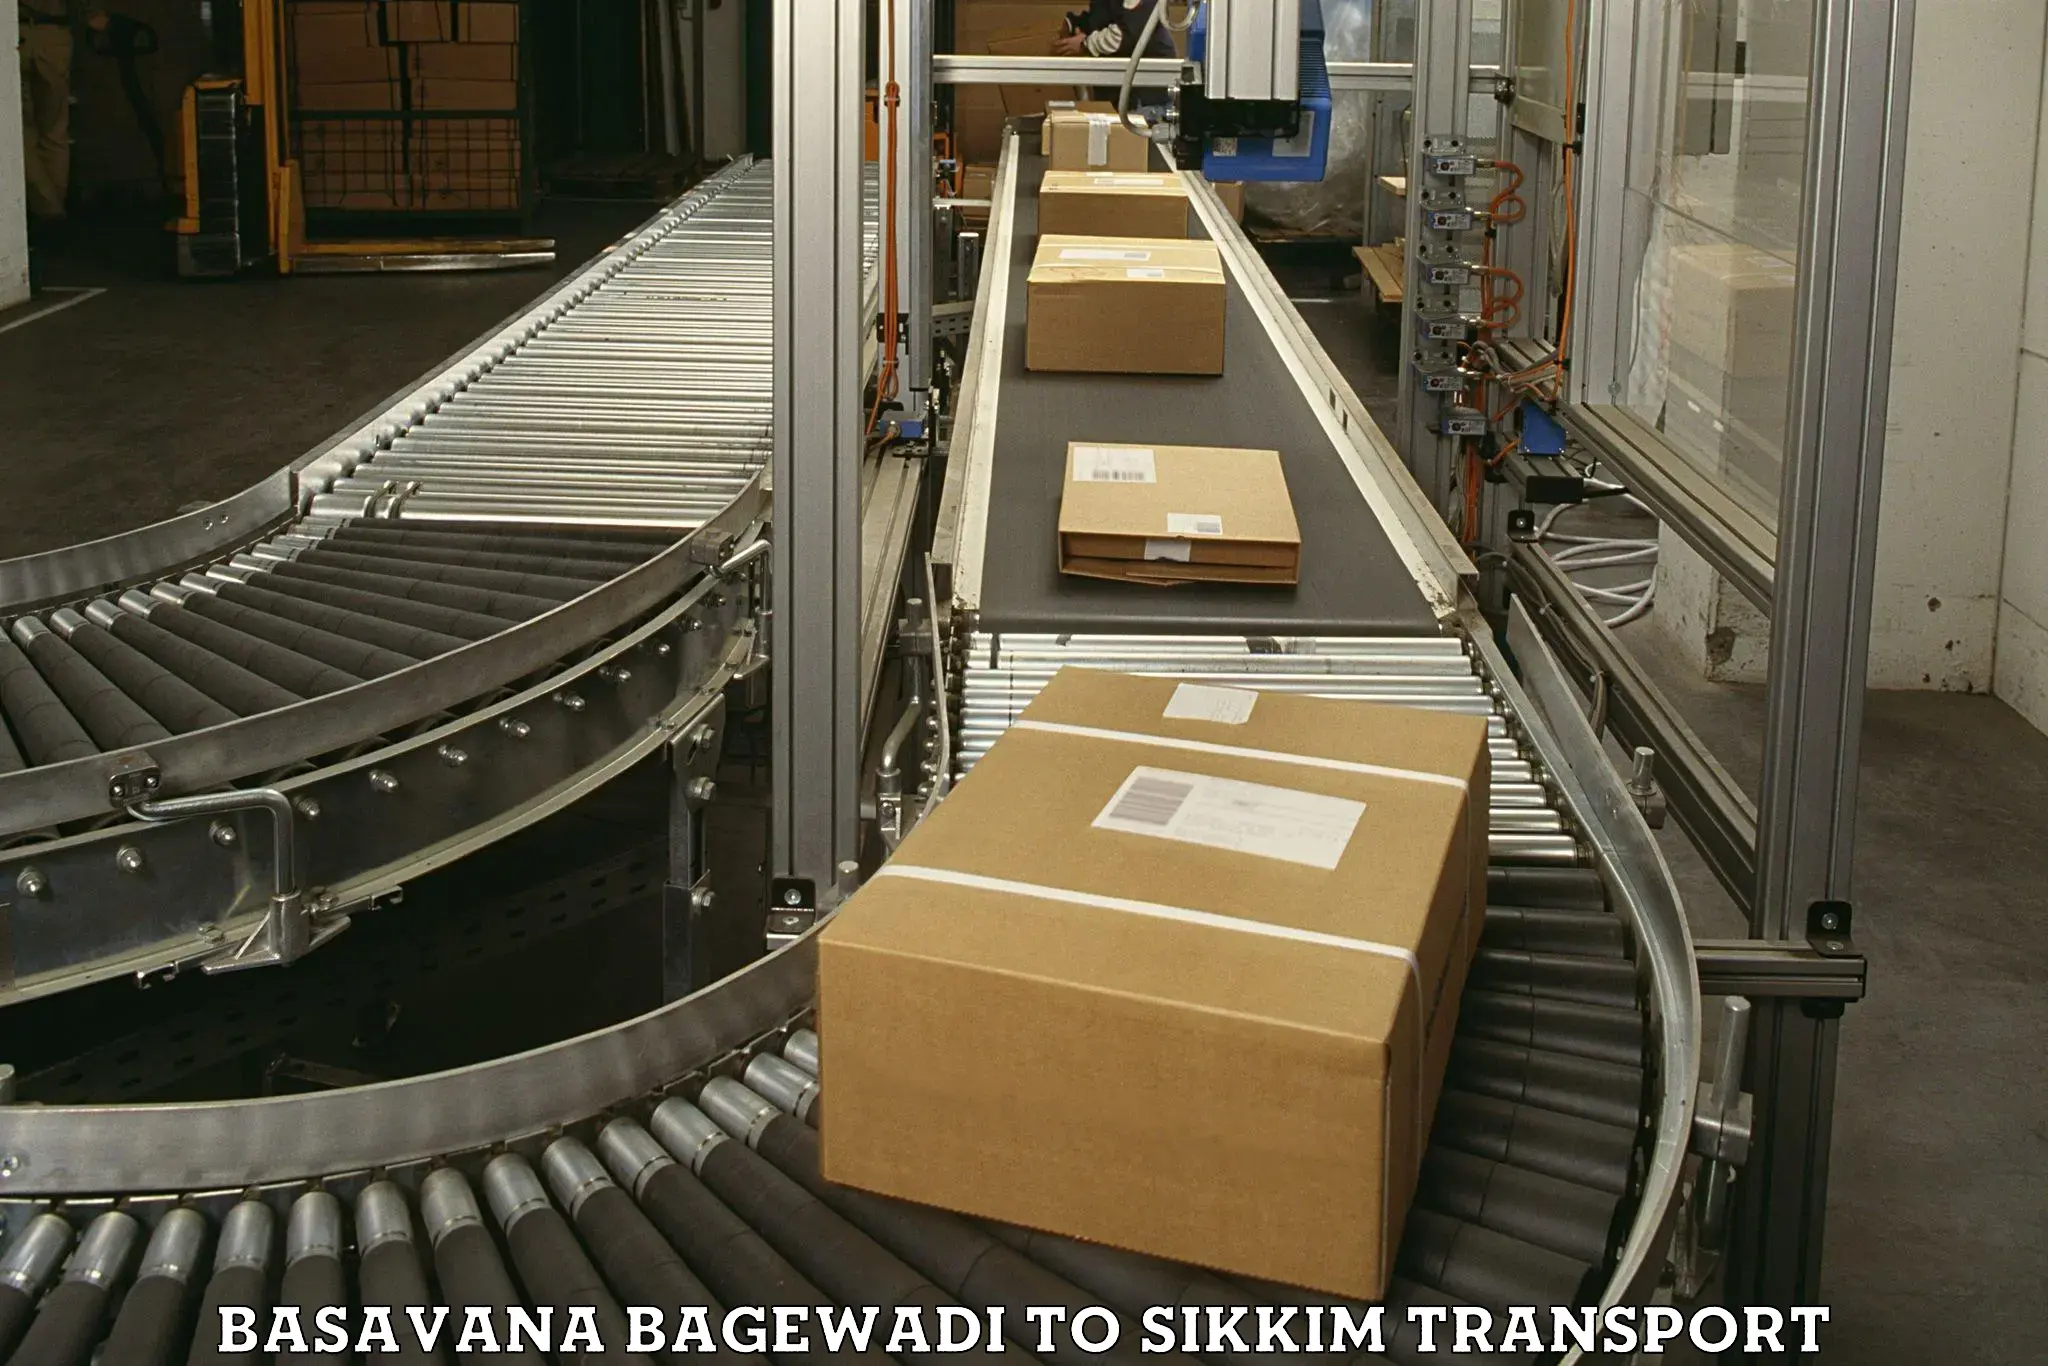 Daily transport service Basavana Bagewadi to Mangan